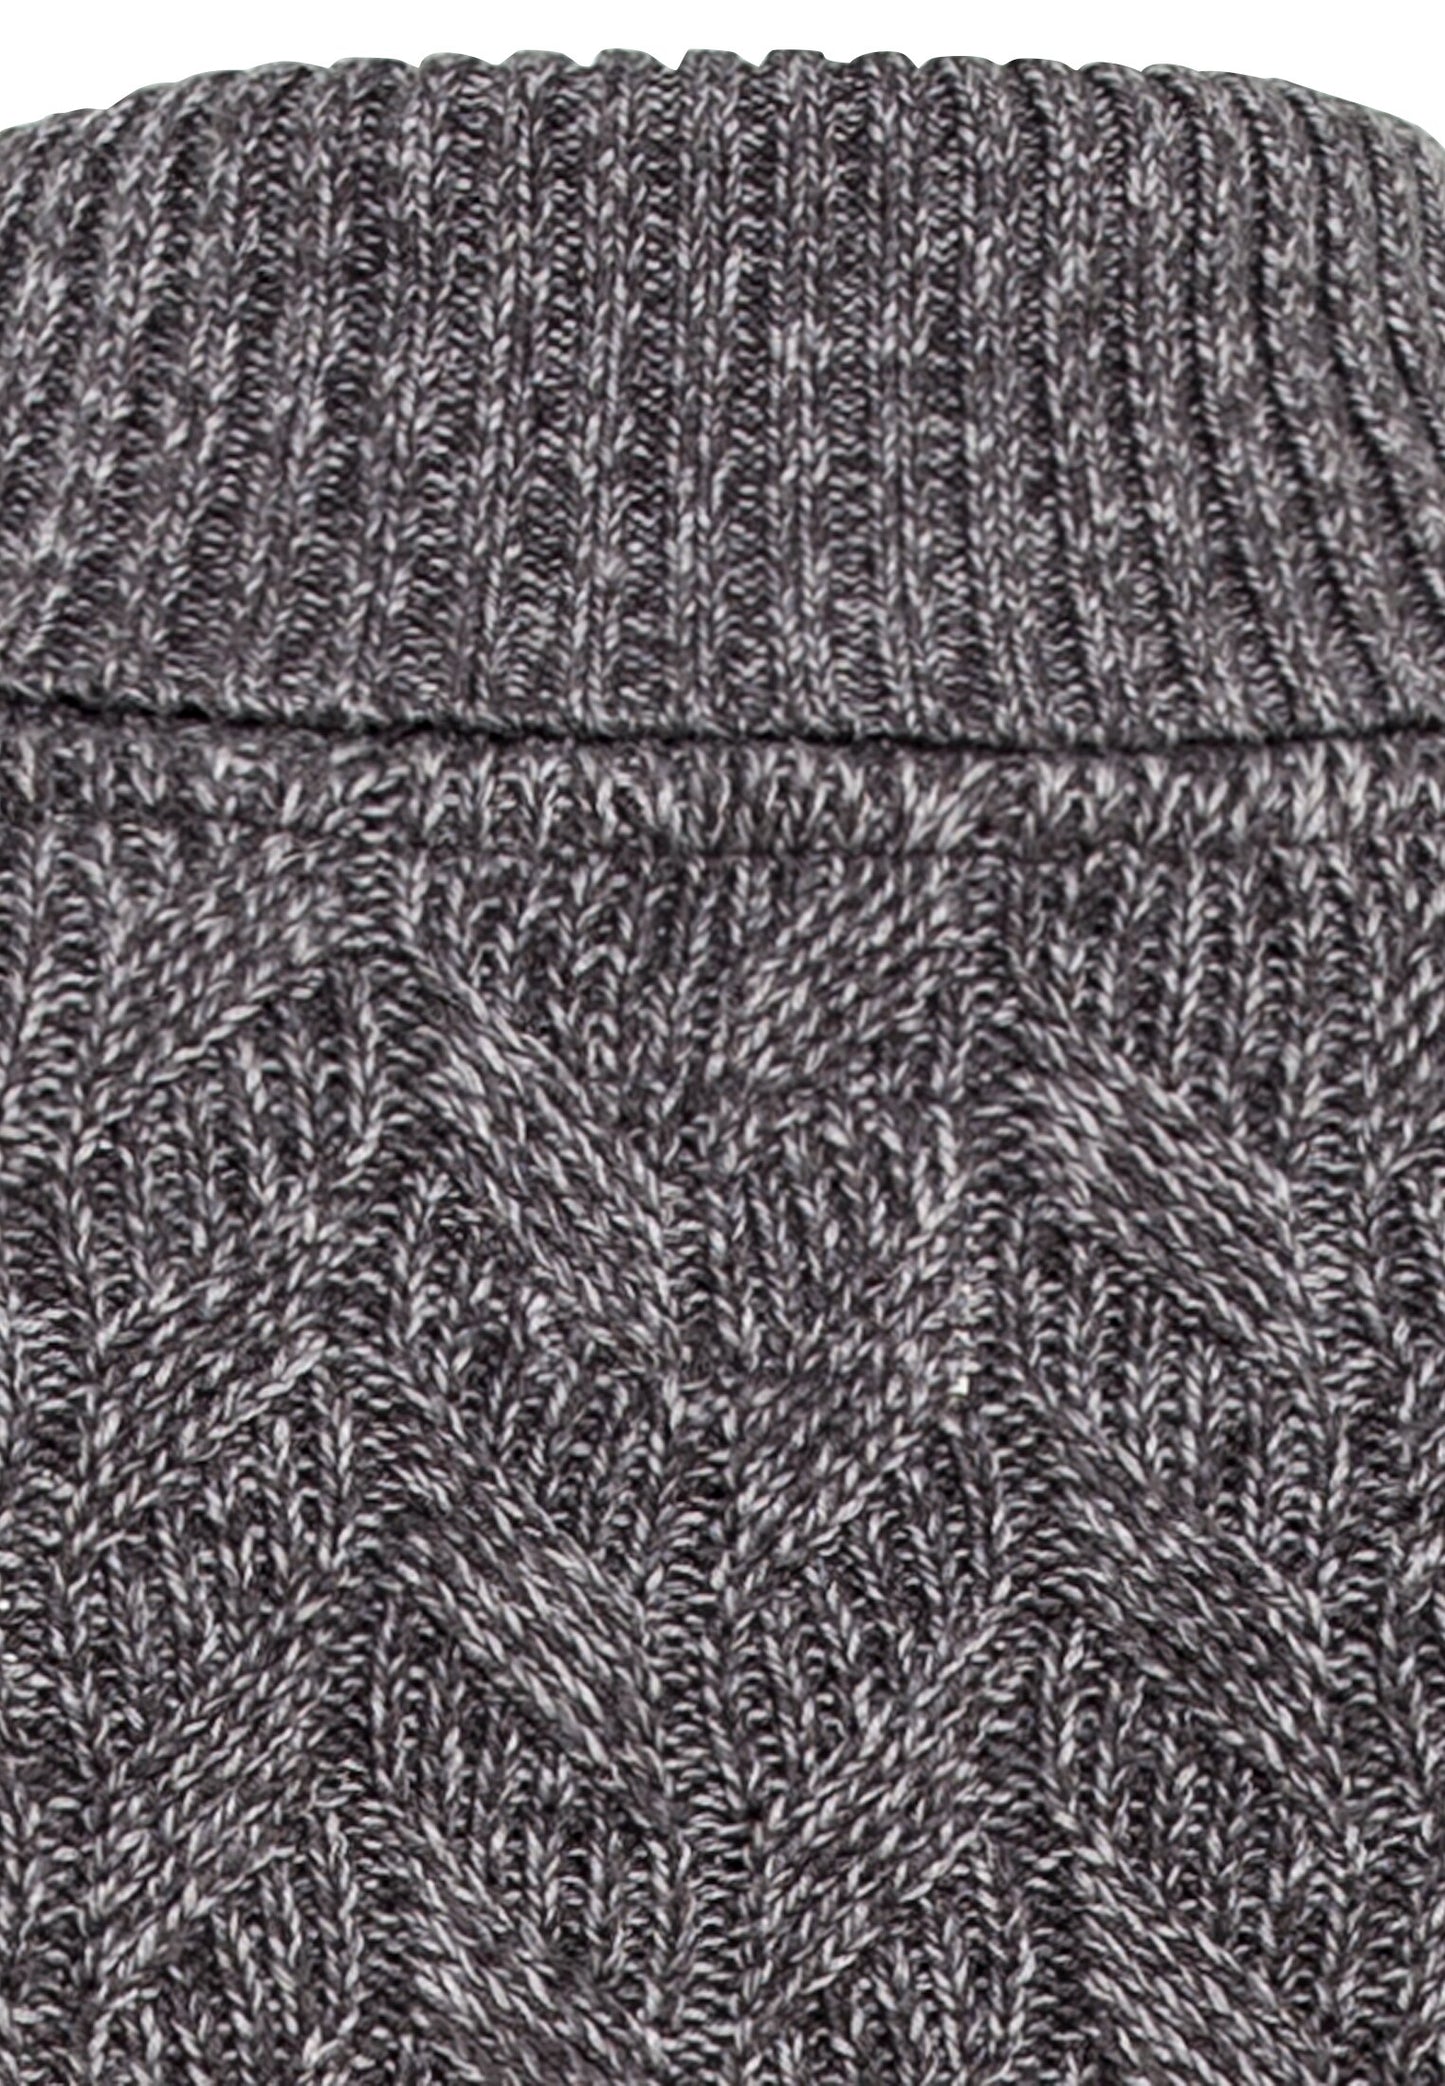 Strickpullover aus einem angenehmen Baumwollmix